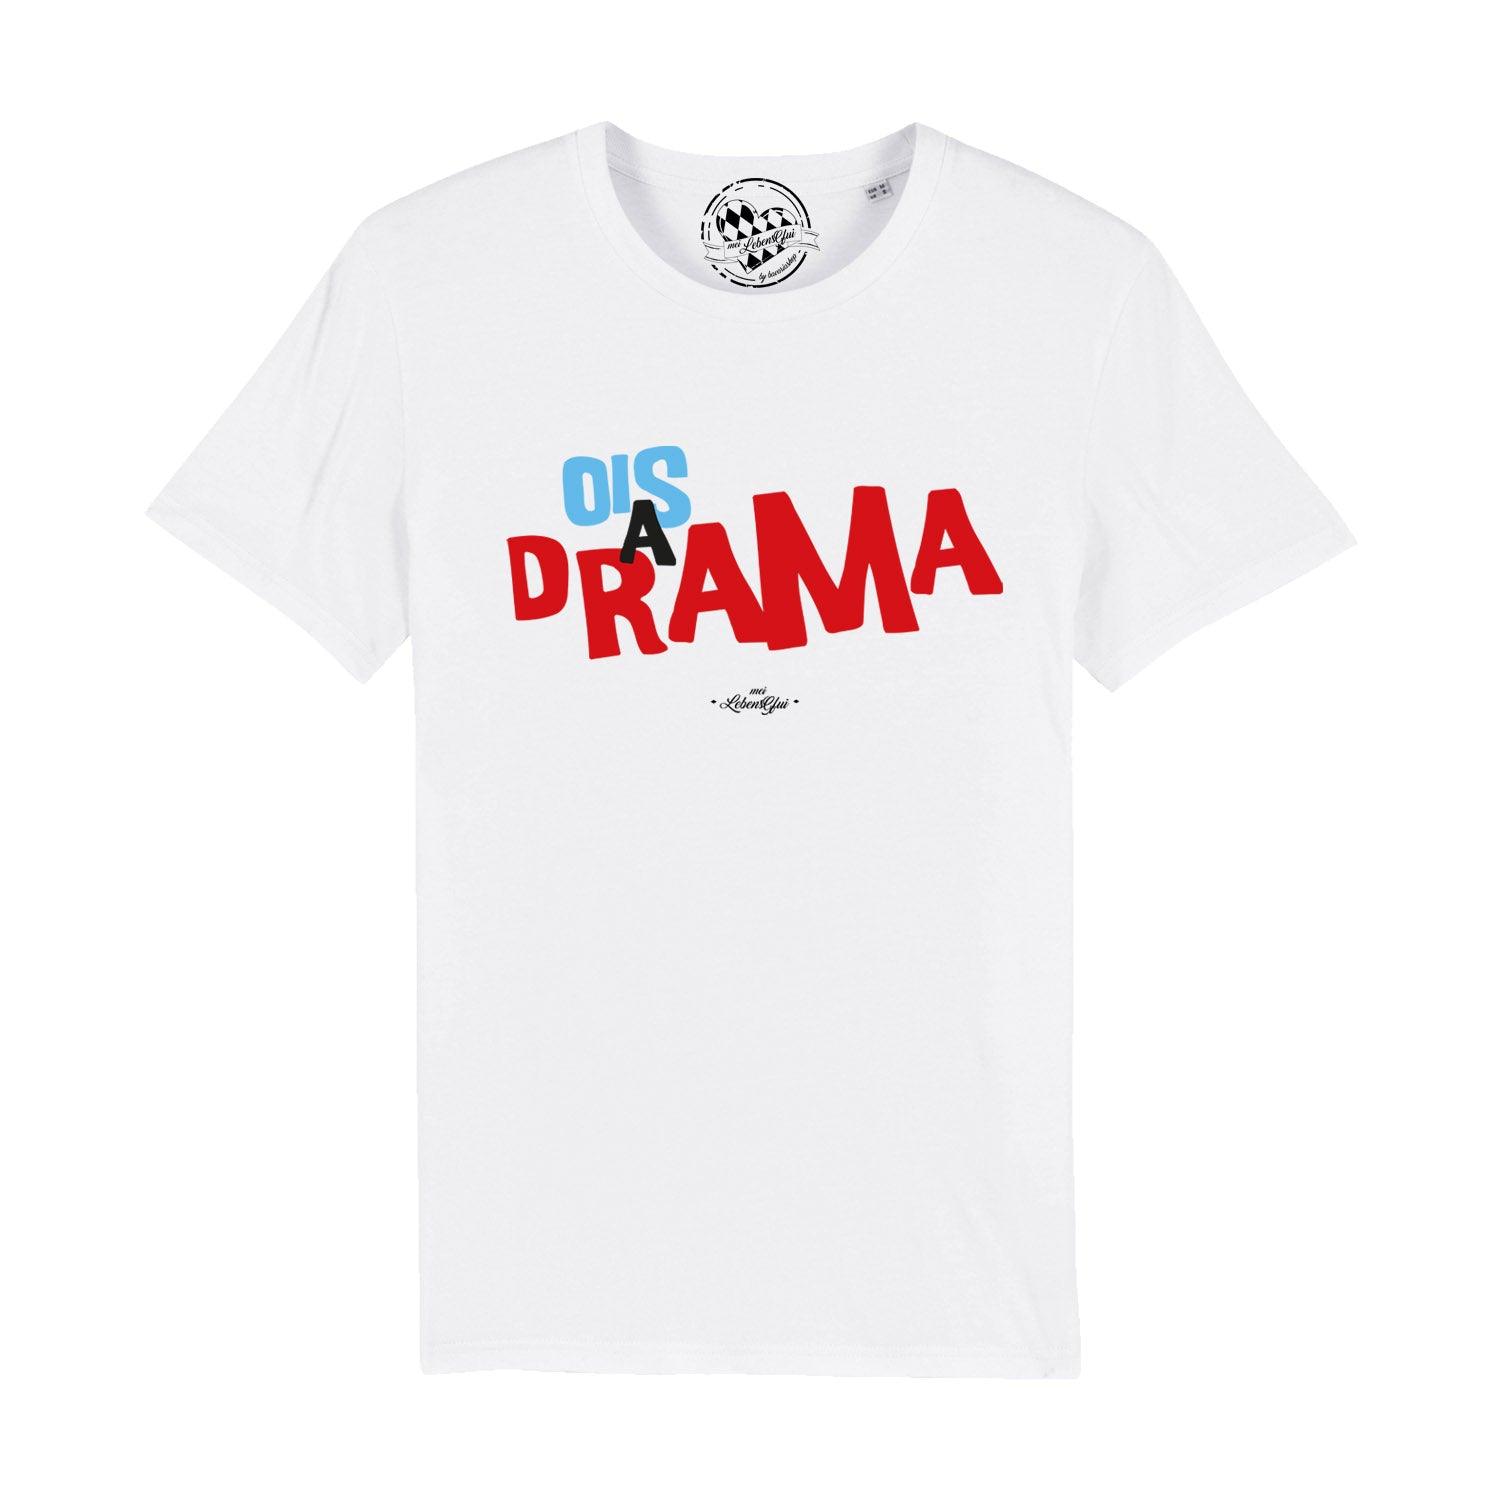 Herren T-Shirt "Ois a Drama" - bavariashop - mei LebensGfui